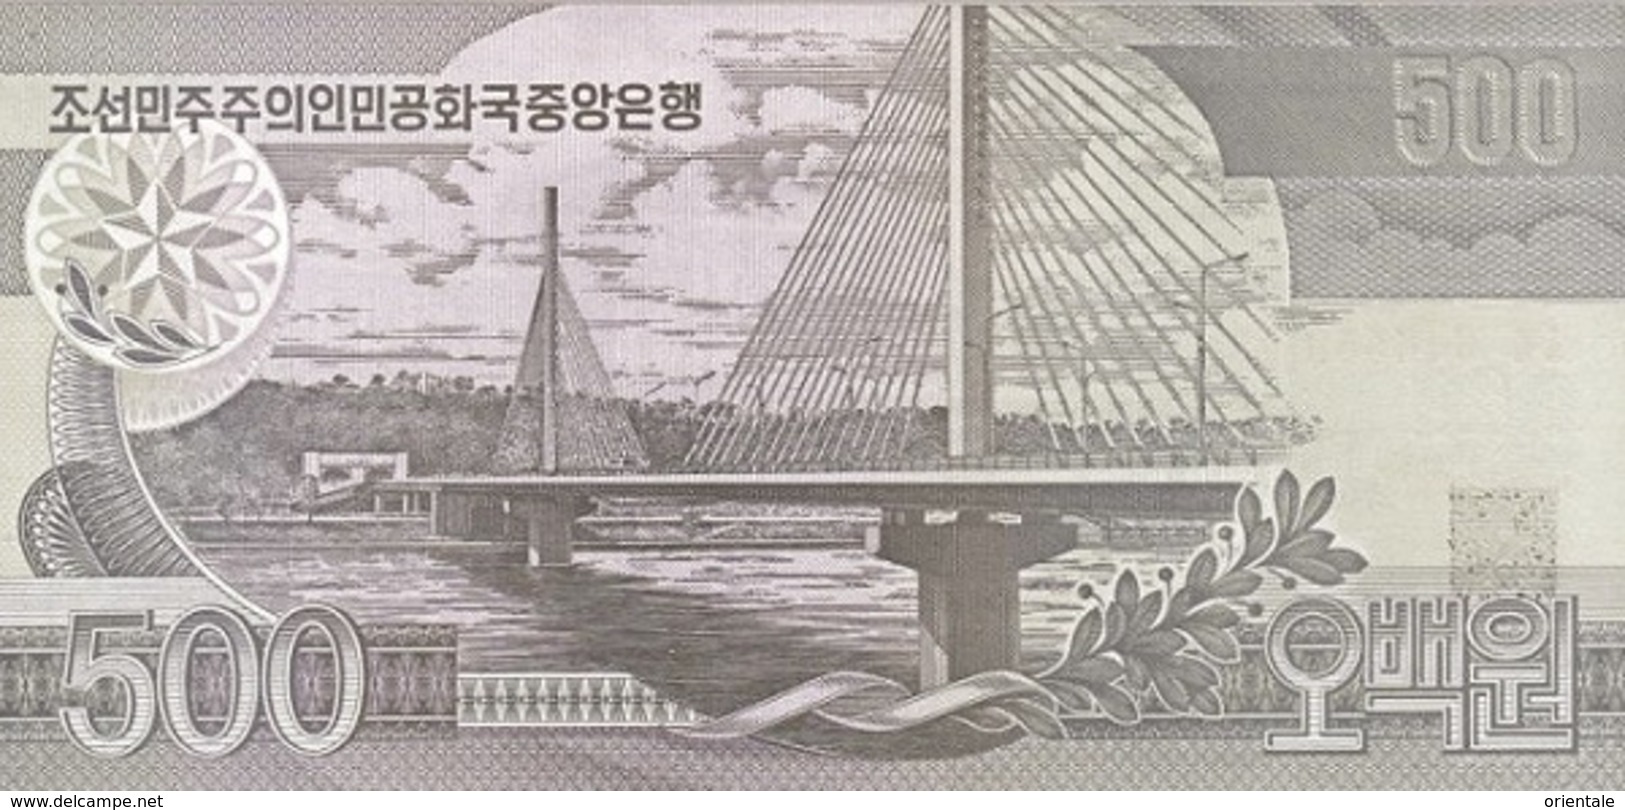 KOREA P. 44b 500 W 1998 UNC - Korea, North